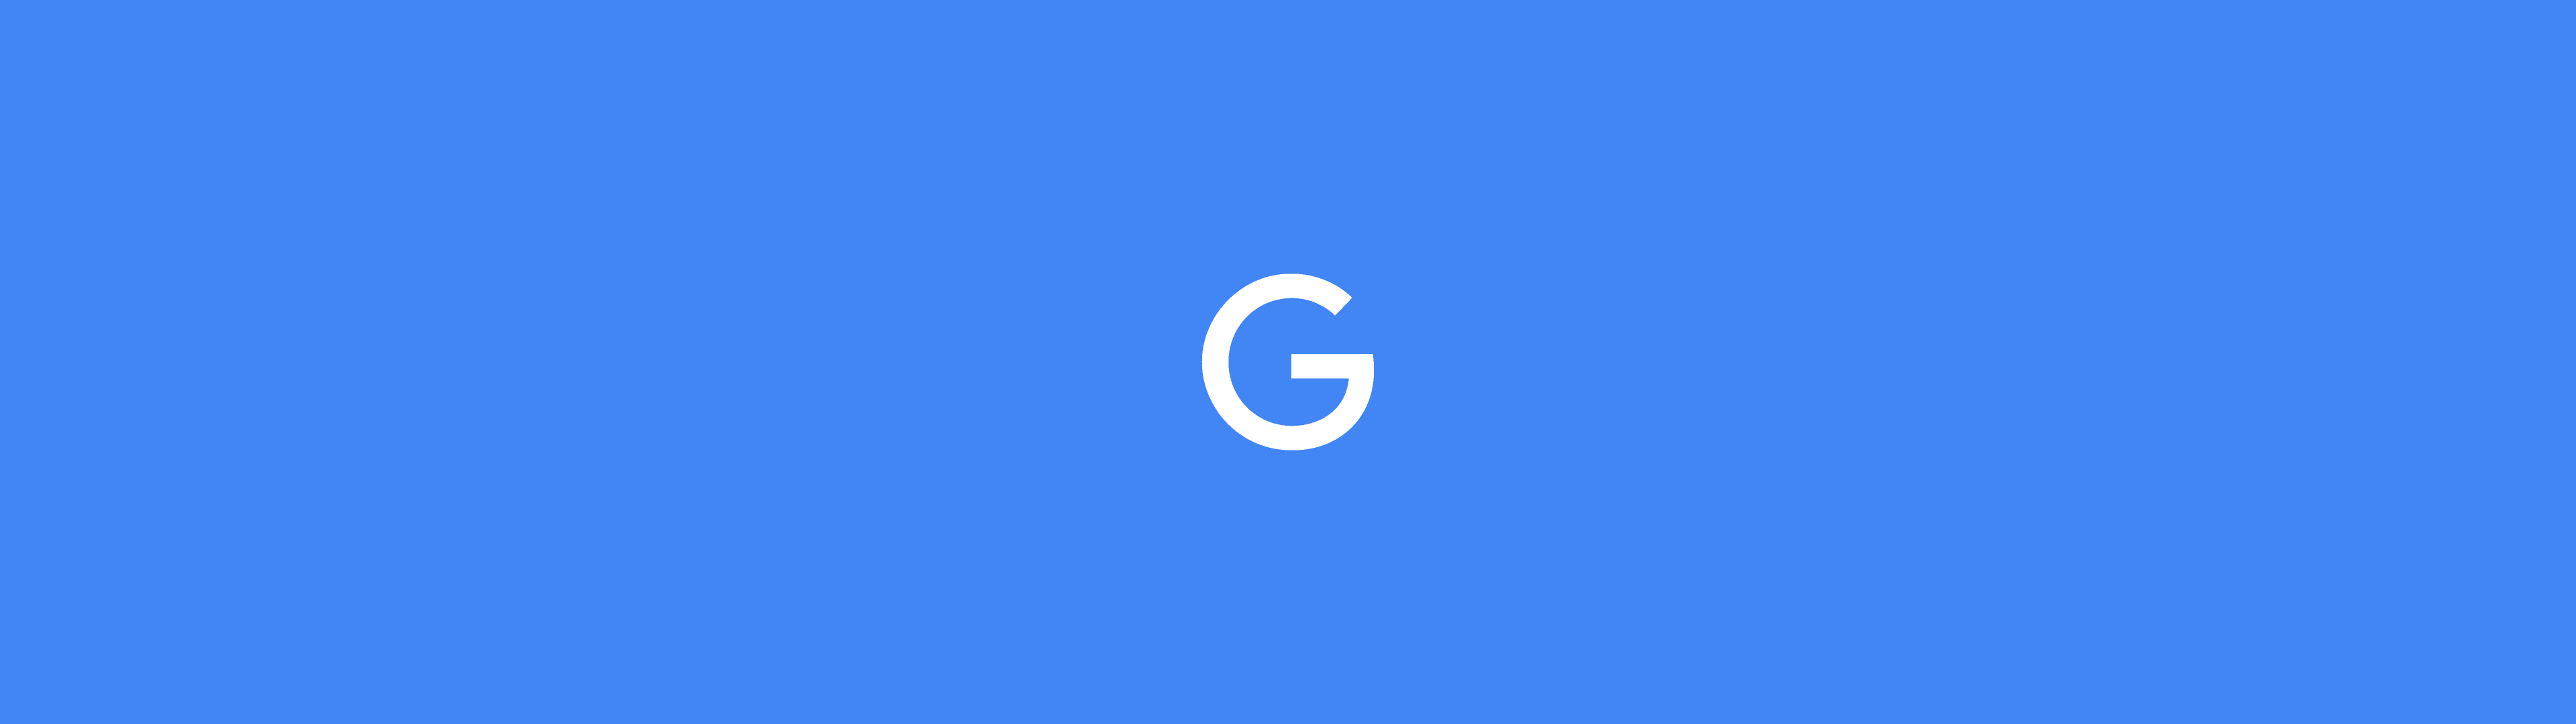 Illustration représentant le logo de Google - seulement la lettre G